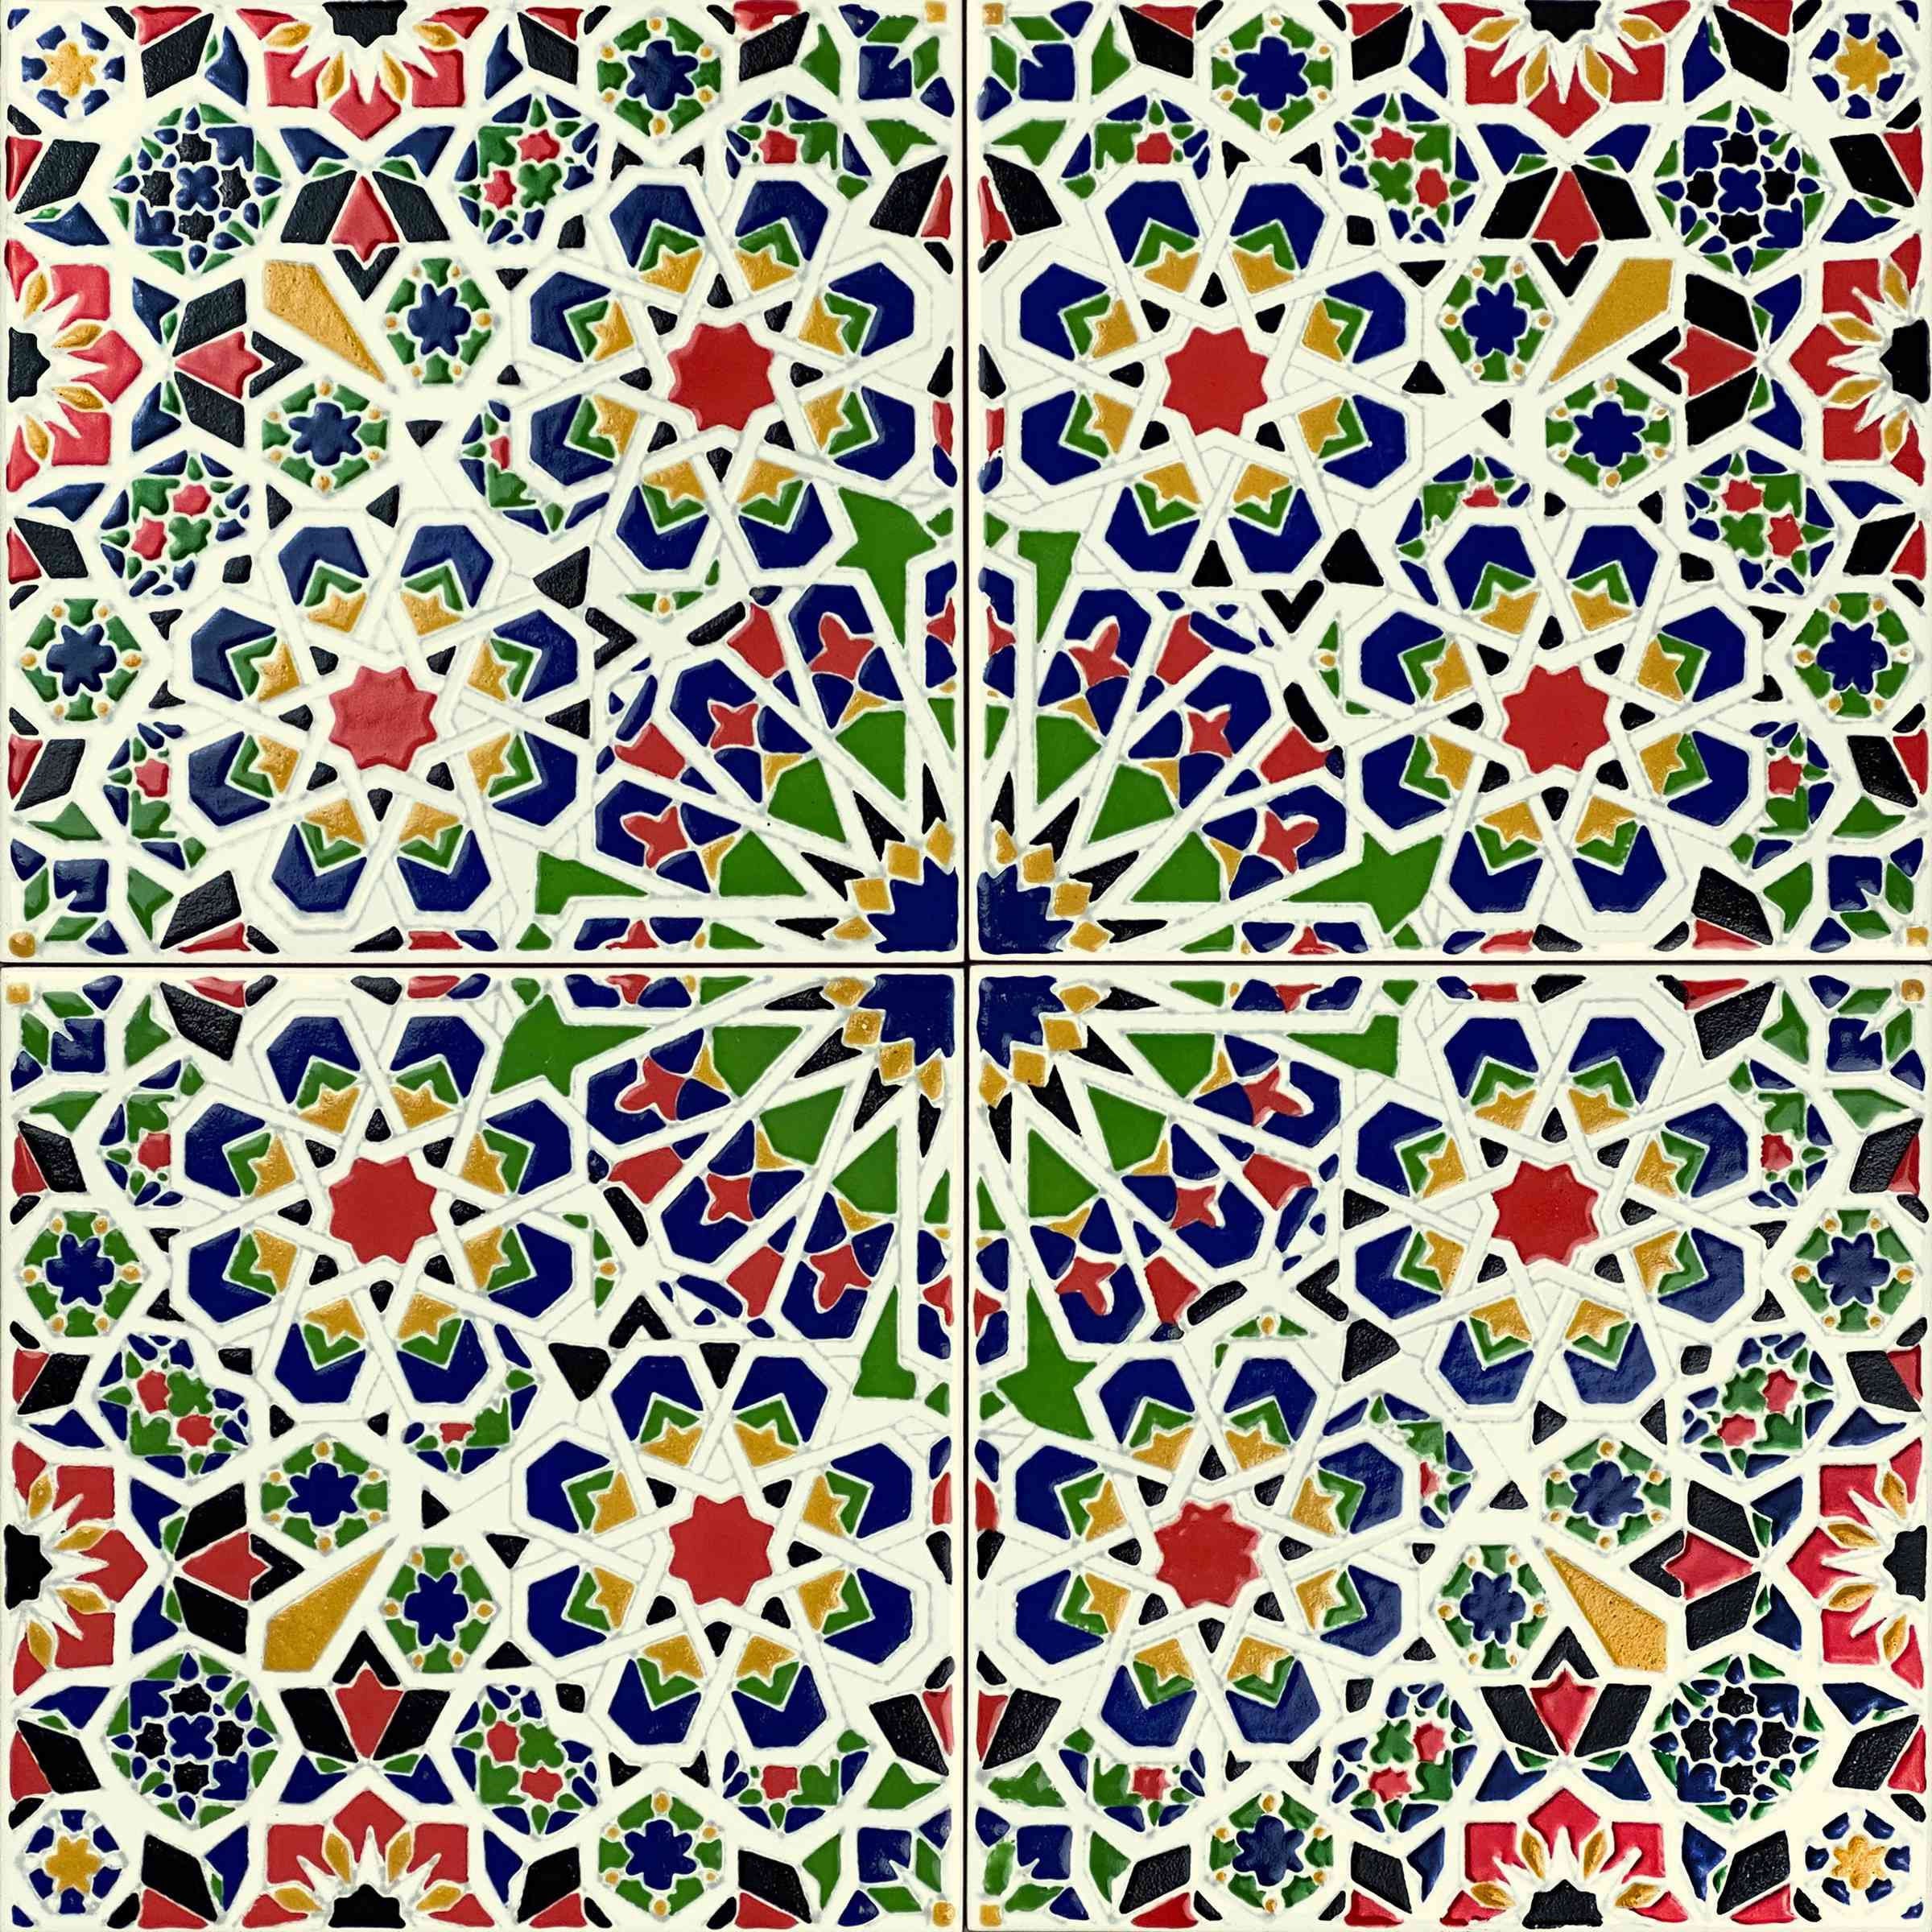 Moroccan Ceramic Tiles 20x20cm, 12 Tiles in Set 0,5m2 Mattullah - Etsy  Denmark